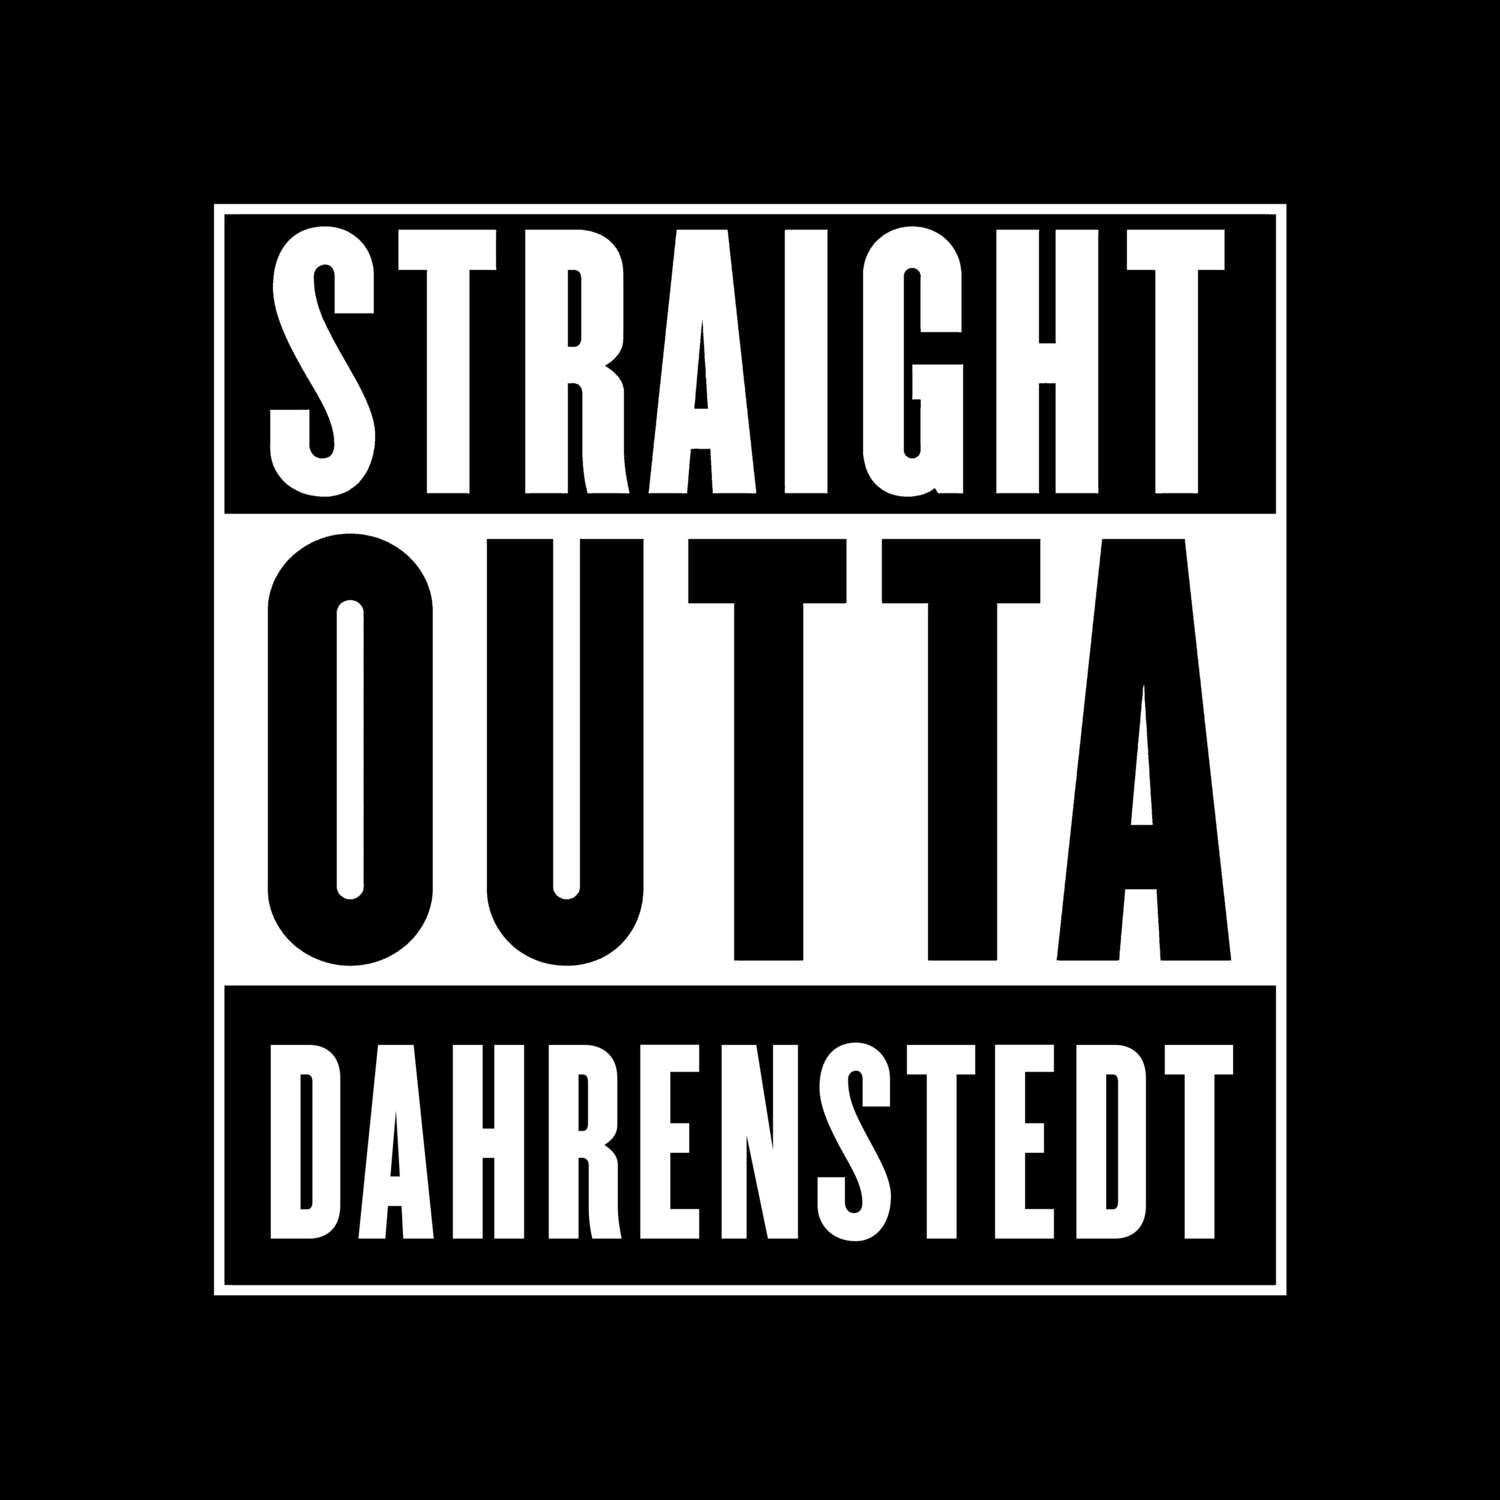 Dahrenstedt T-Shirt »Straight Outta«